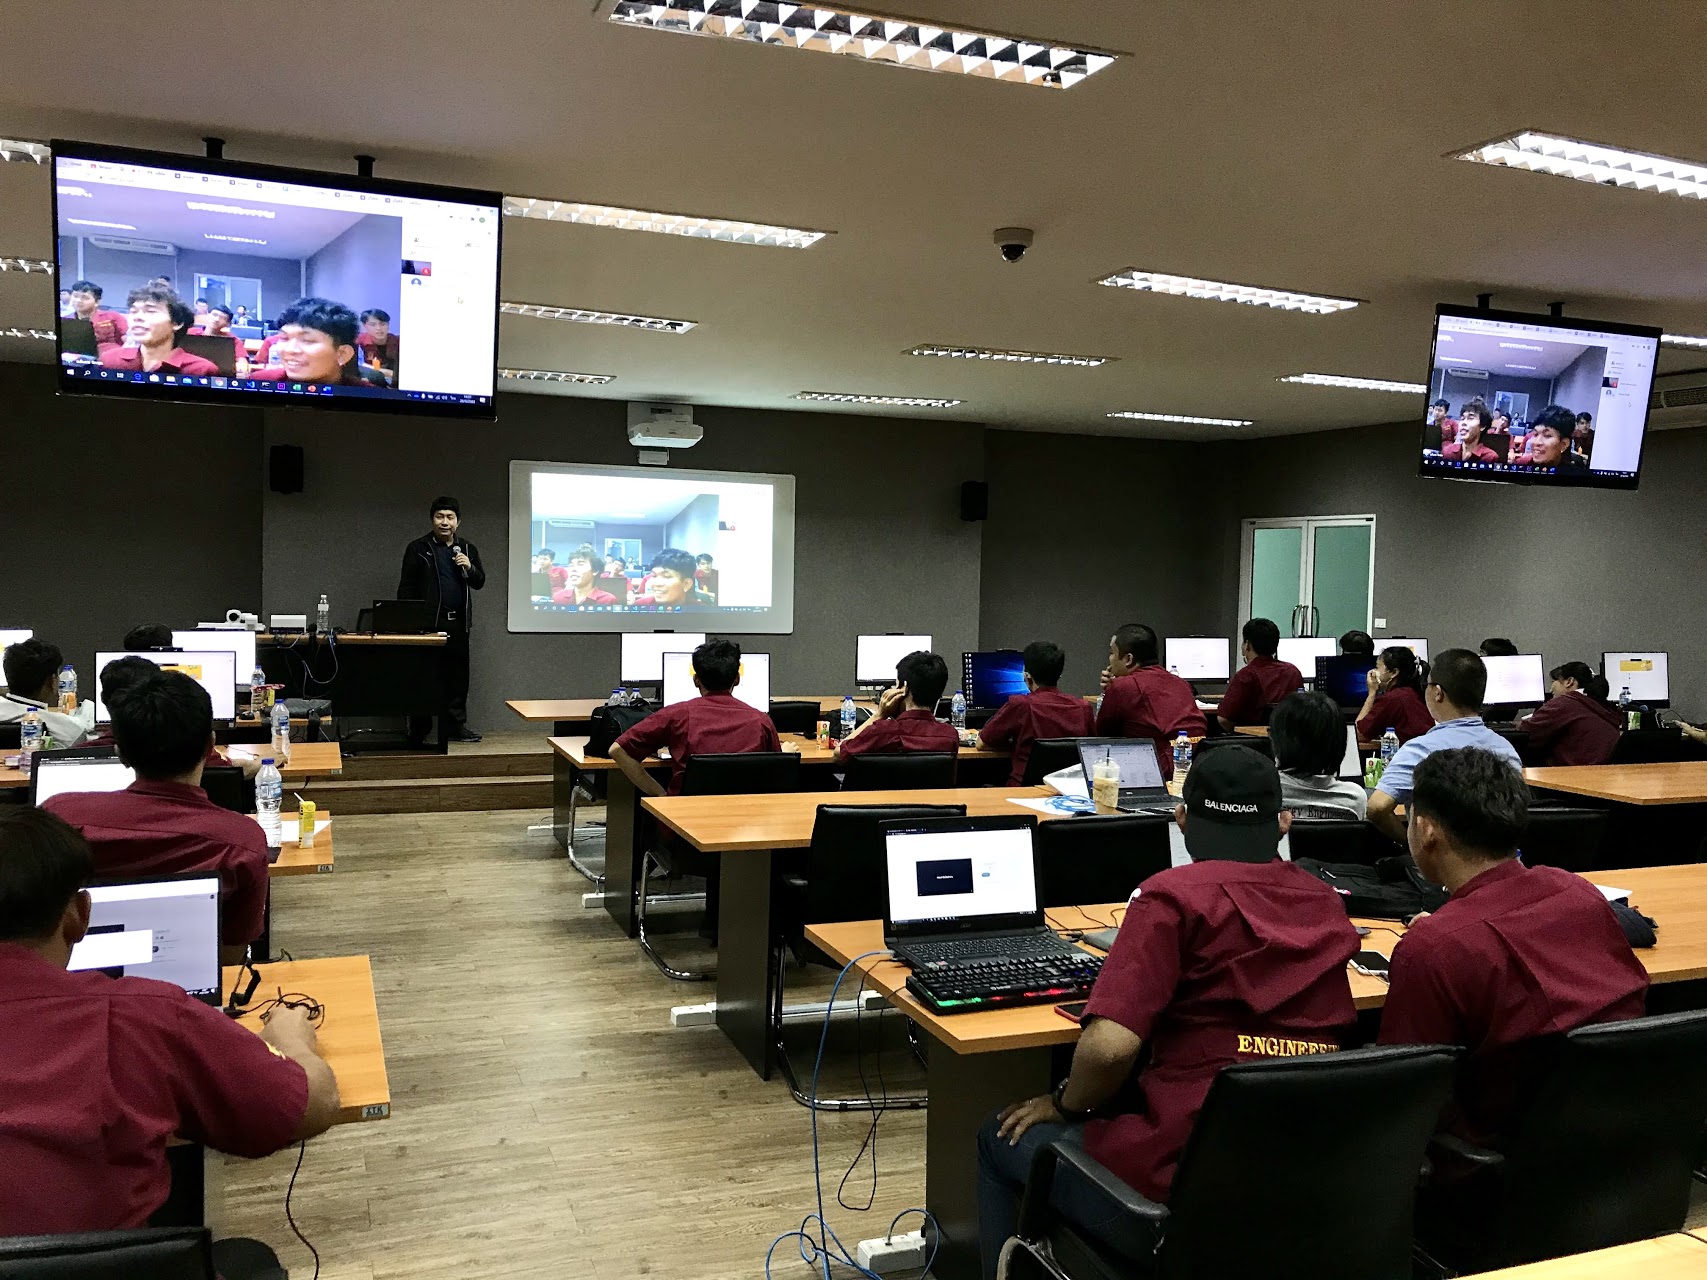 วิทยาลัยธาตุพนม มหาวิทยาลัยนครพนม เข้าศึกษาดูงานพร้อมรับการอบรม เรื่องการจัดการเรียนการสอนออนไลน์ด้วยโปรแกรม Classroom , Meet , Teams